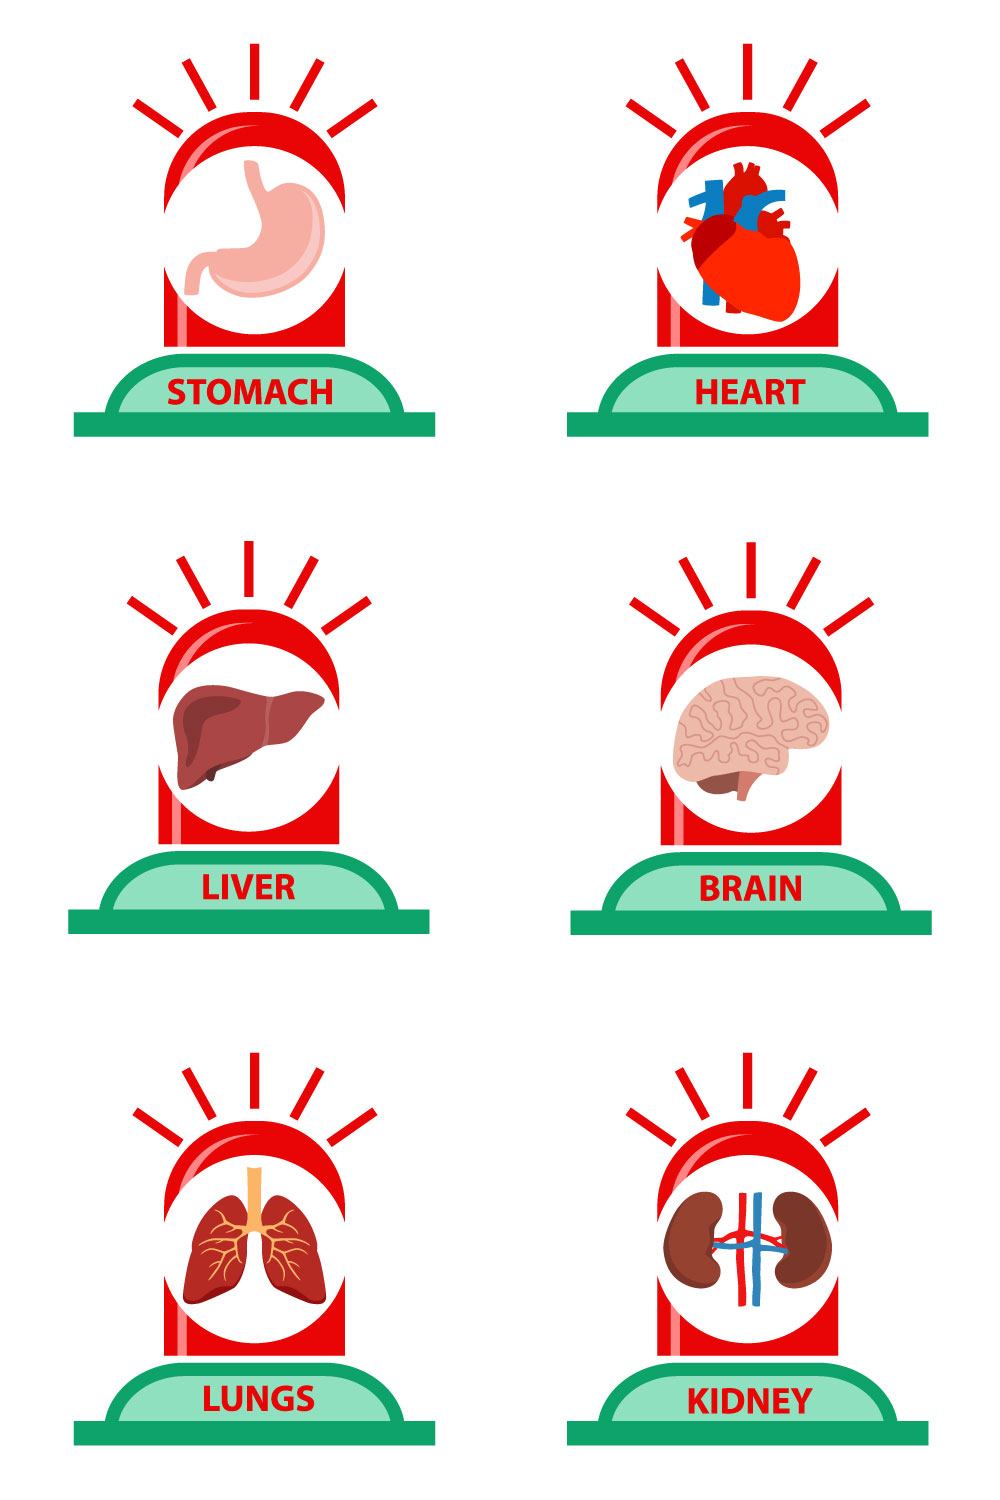 Medical Emergency Icons Design pinterest image.